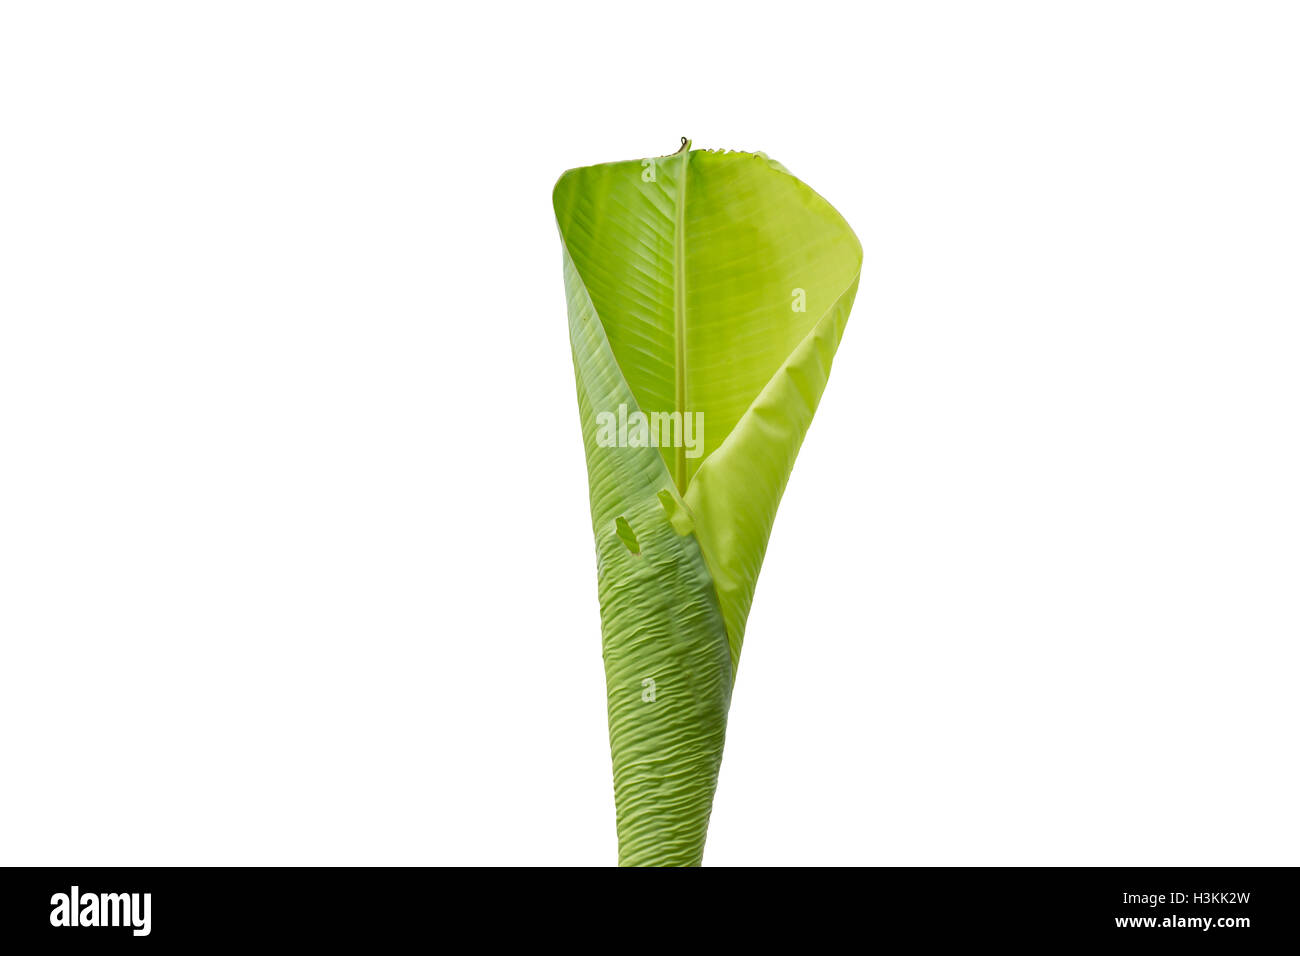 Banana leaf isolated on white background Stock Photo